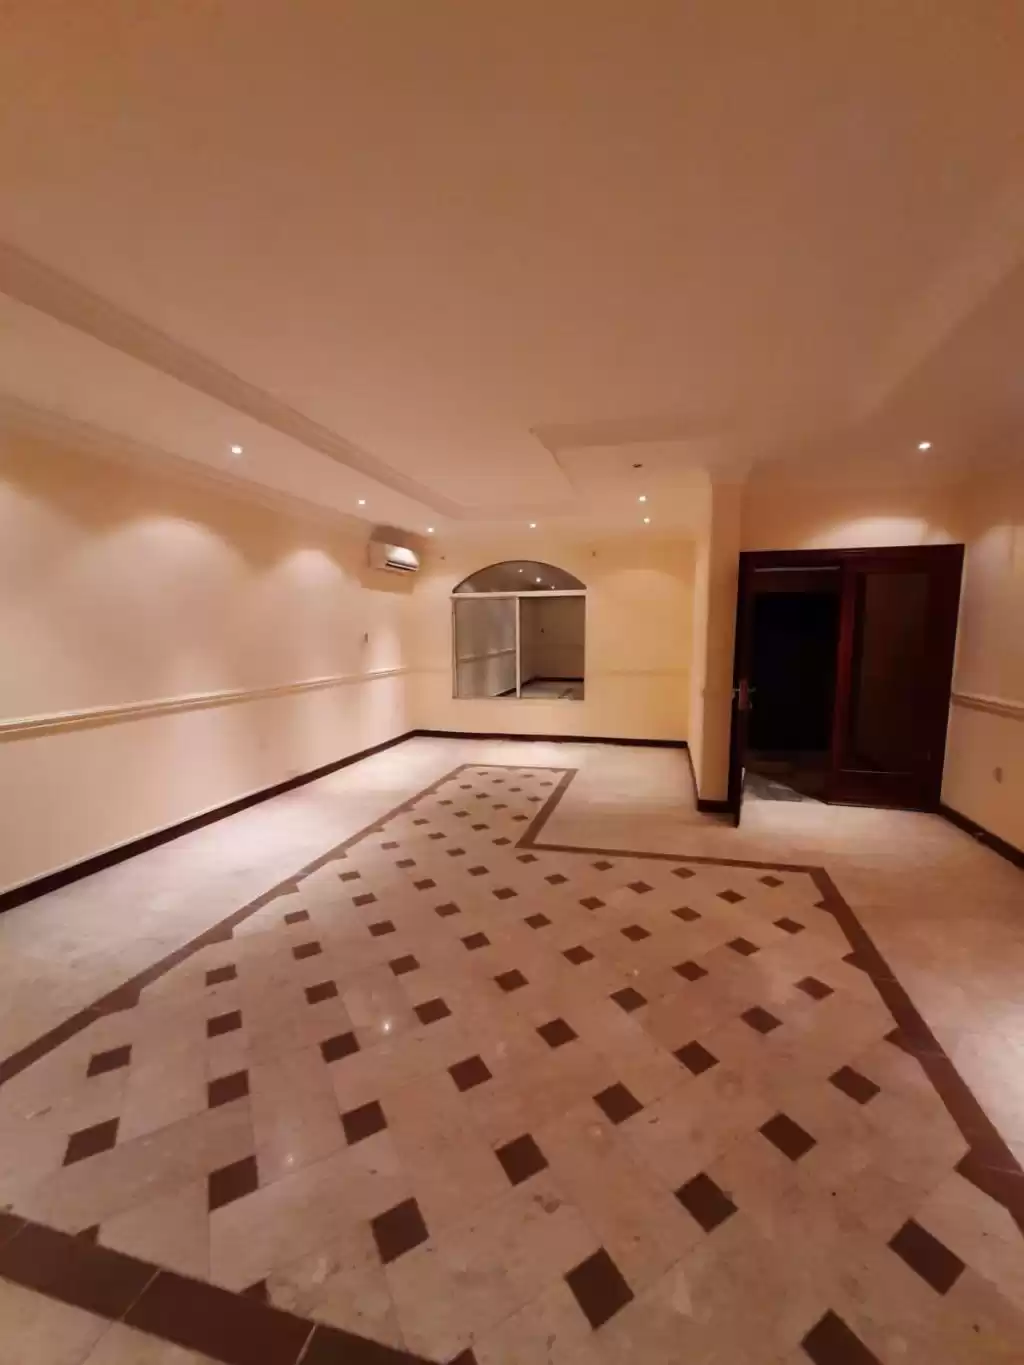 Résidentiel Propriété prête 4 chambres U / f Villa autonome  a louer au Al-Sadd , Doha #12625 - 1  image 